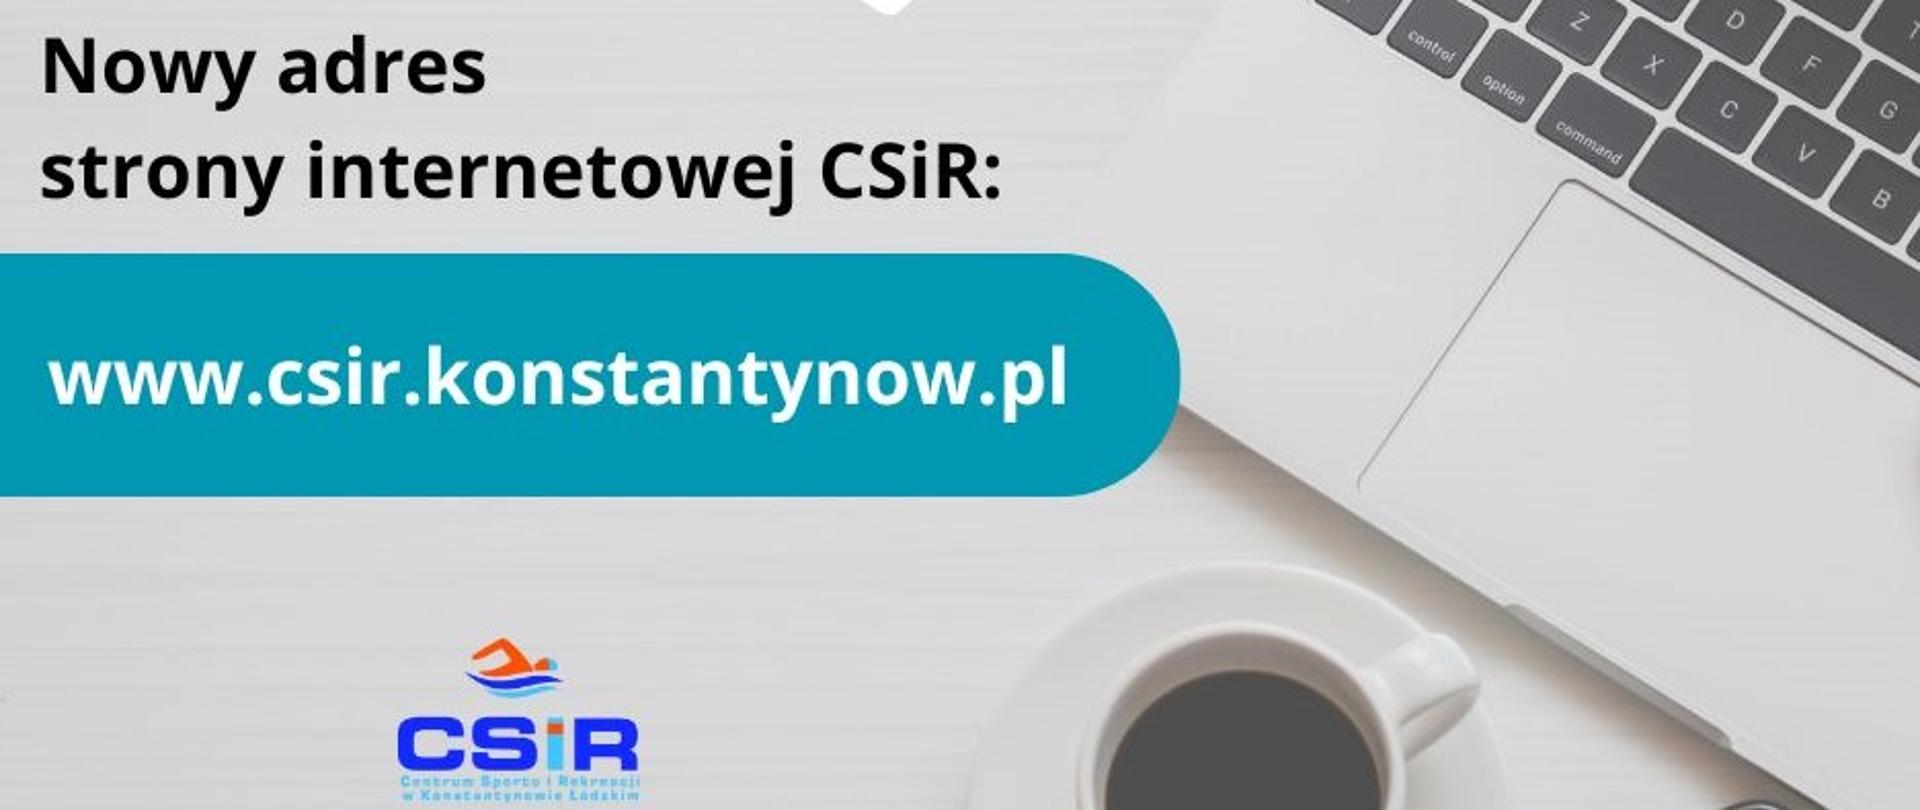 Nowy adres strony internetowej CSiR: www.csir.konstantynow.pl